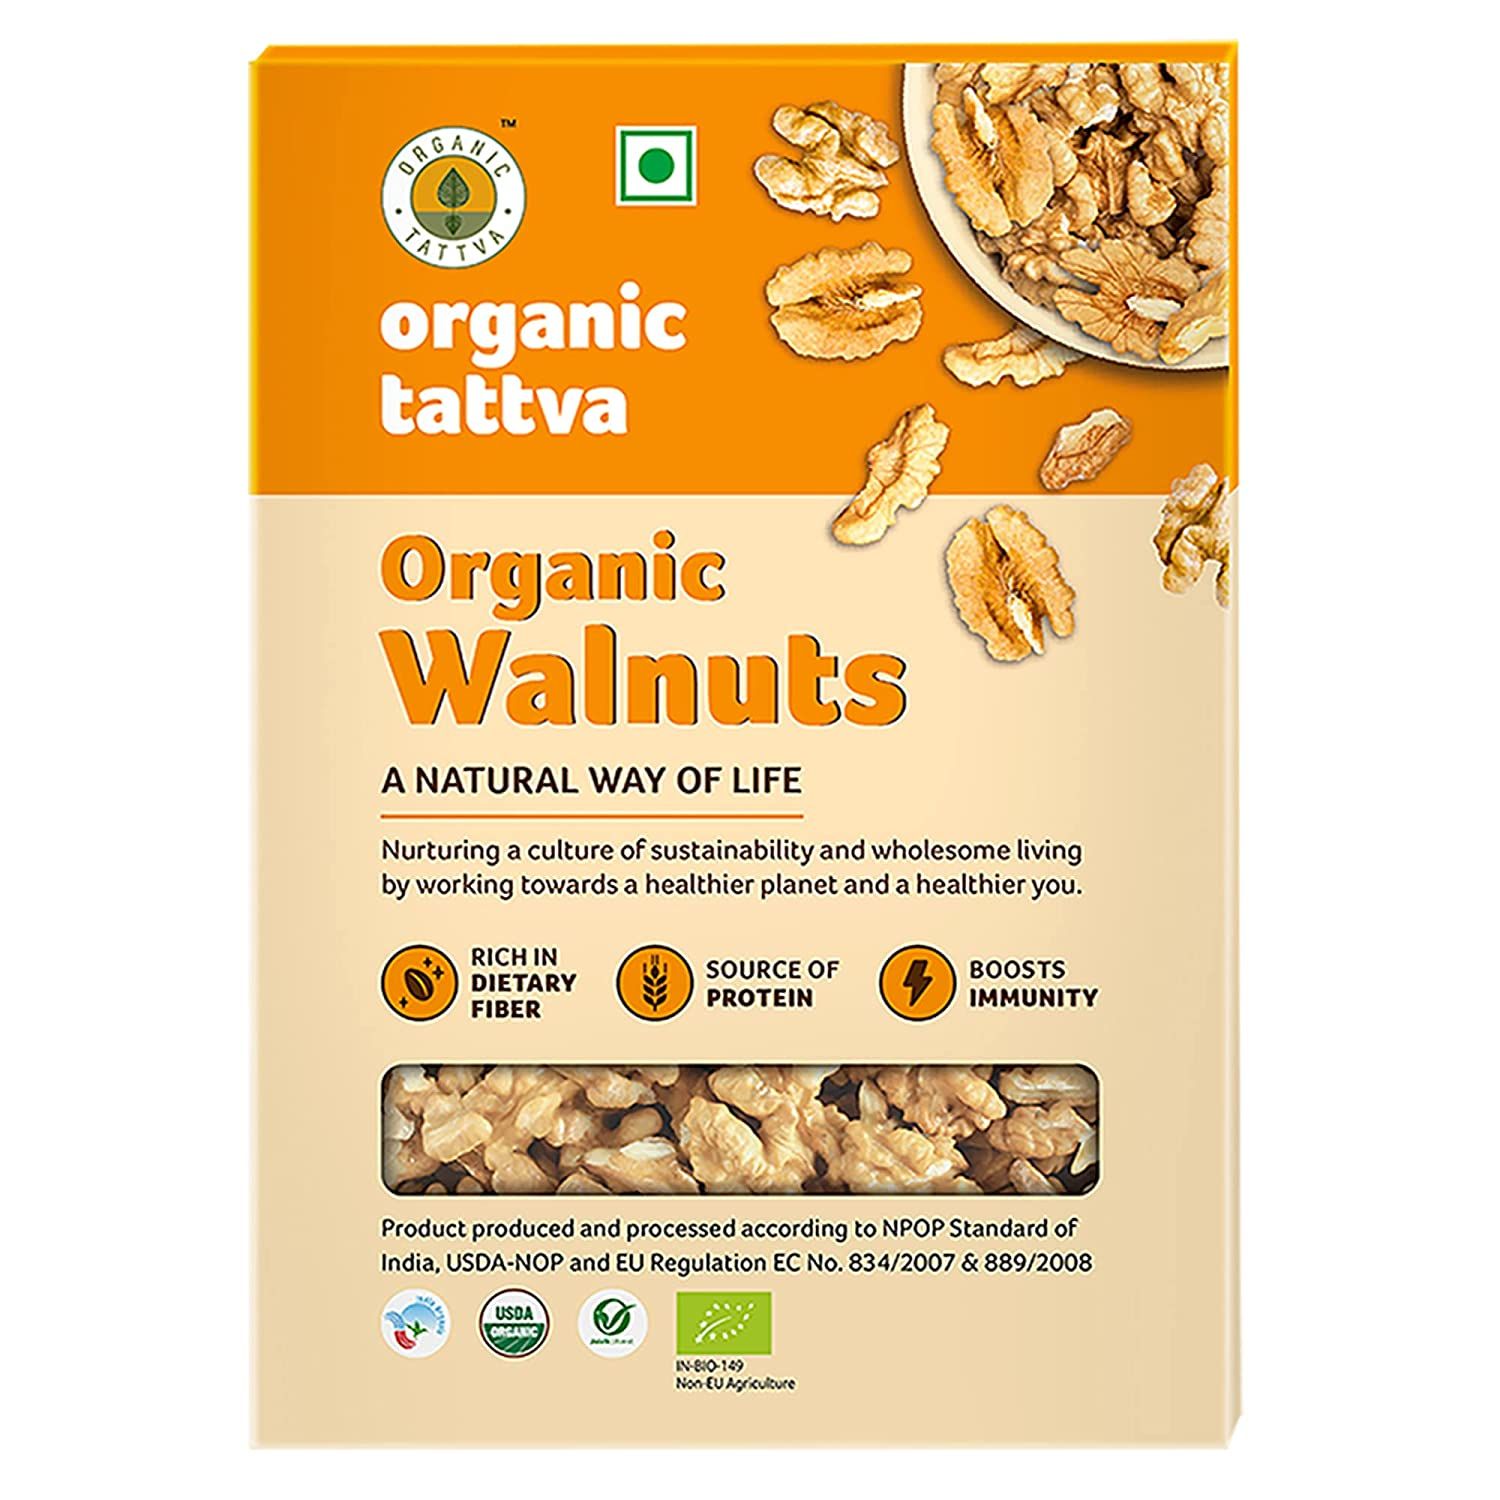 Organic Tattva Walnuts Image